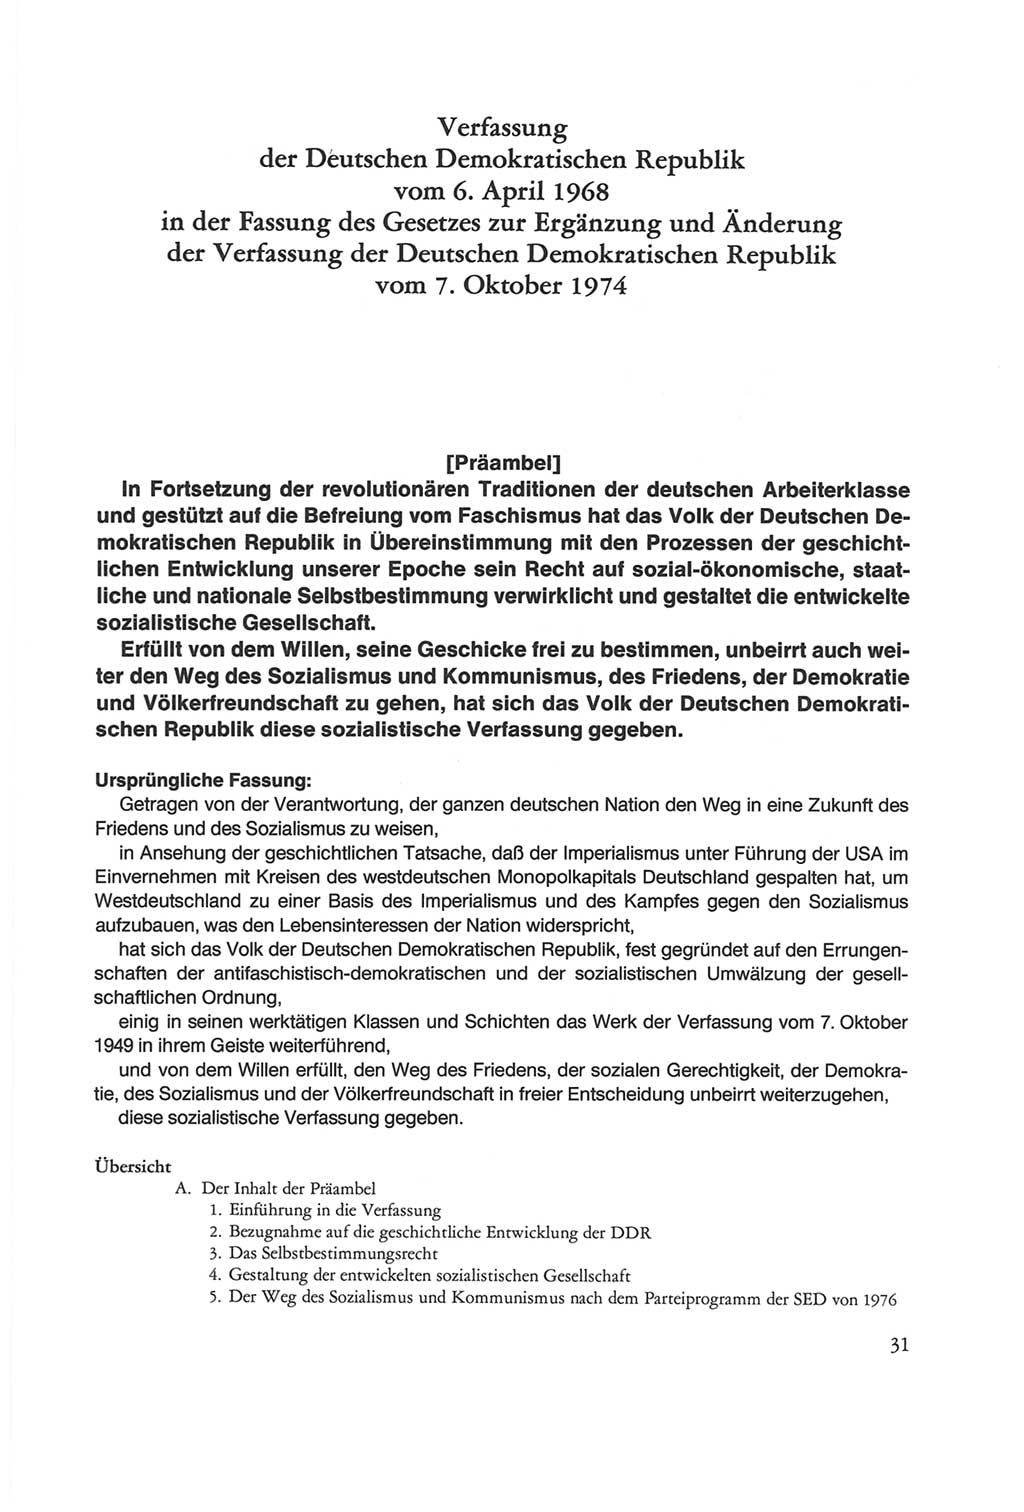 Die sozialistische Verfassung der Deutschen Demokratischen Republik (DDR), Kommentar mit einem Nachtrag 1997, Seite 31 (Soz. Verf. DDR Komm. Nachtr. 1997, S. 31)